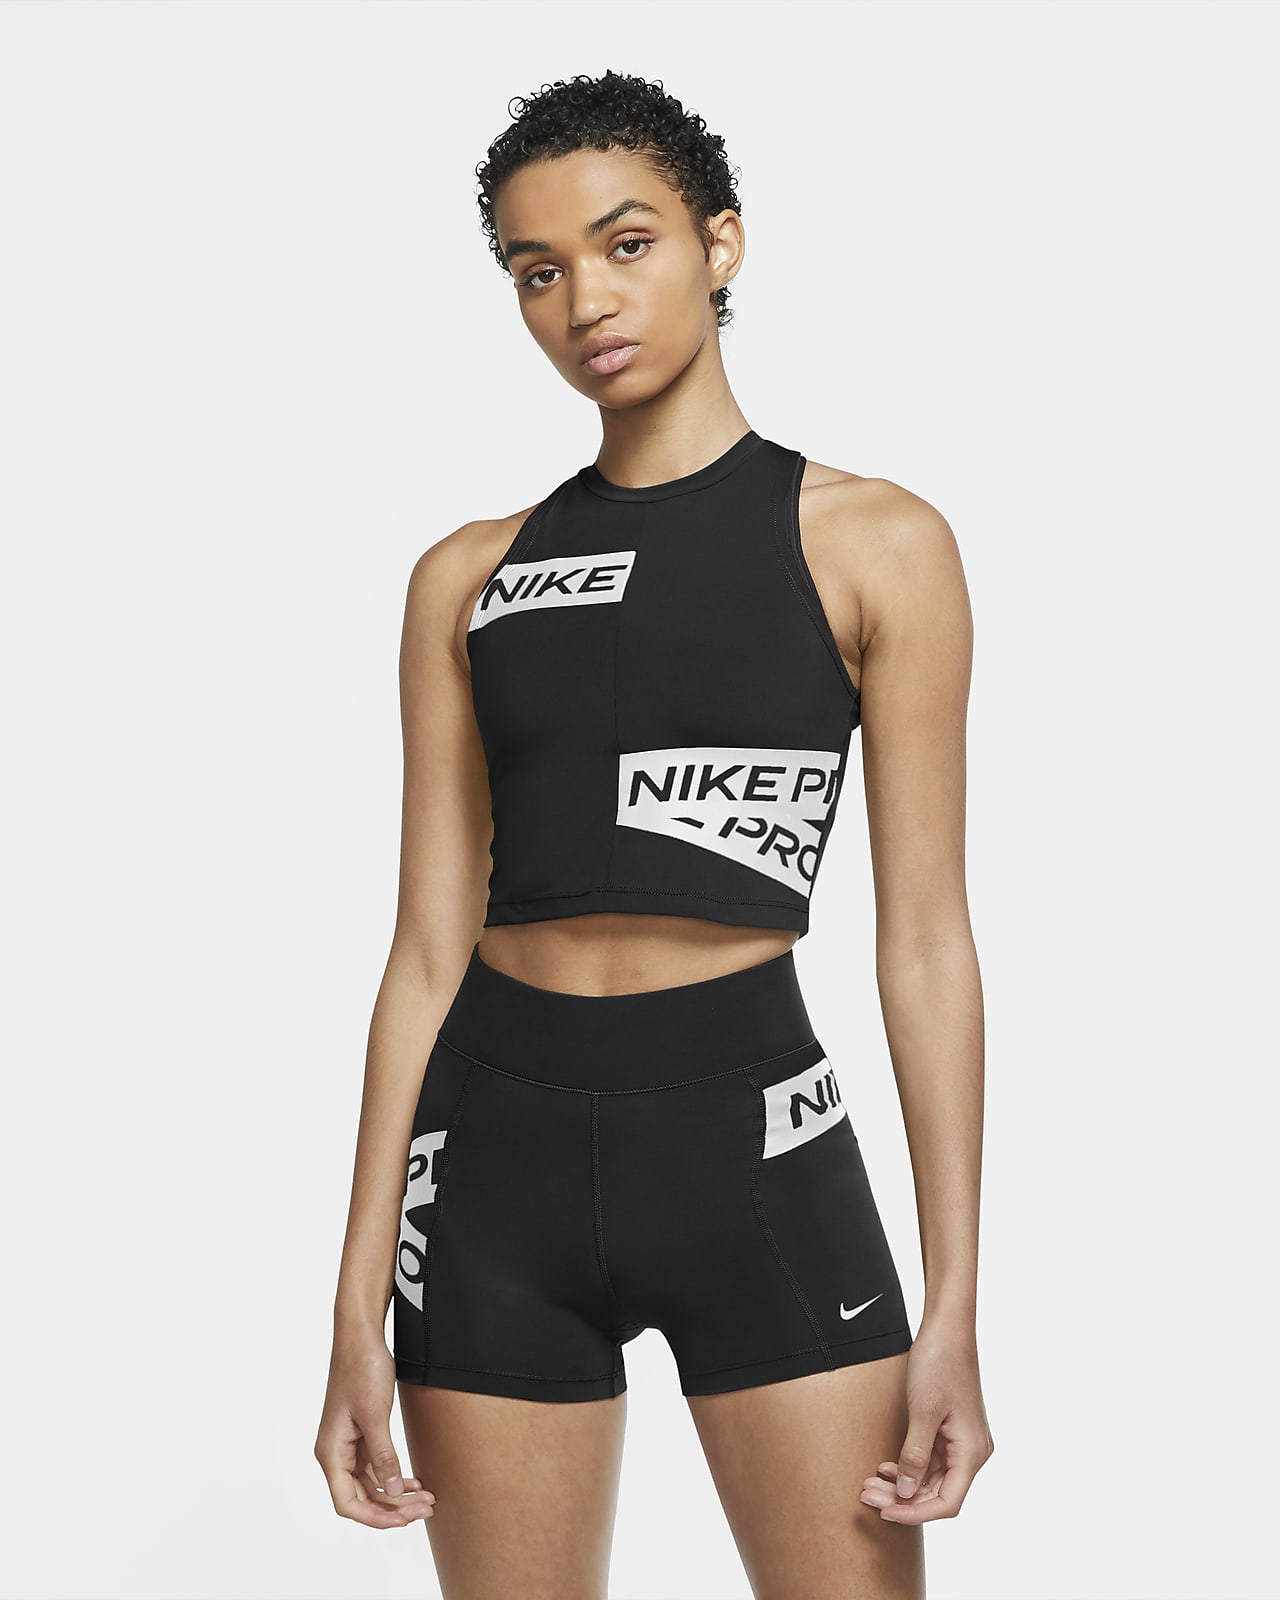 Débardeur à motif Nike Pro pour Femme